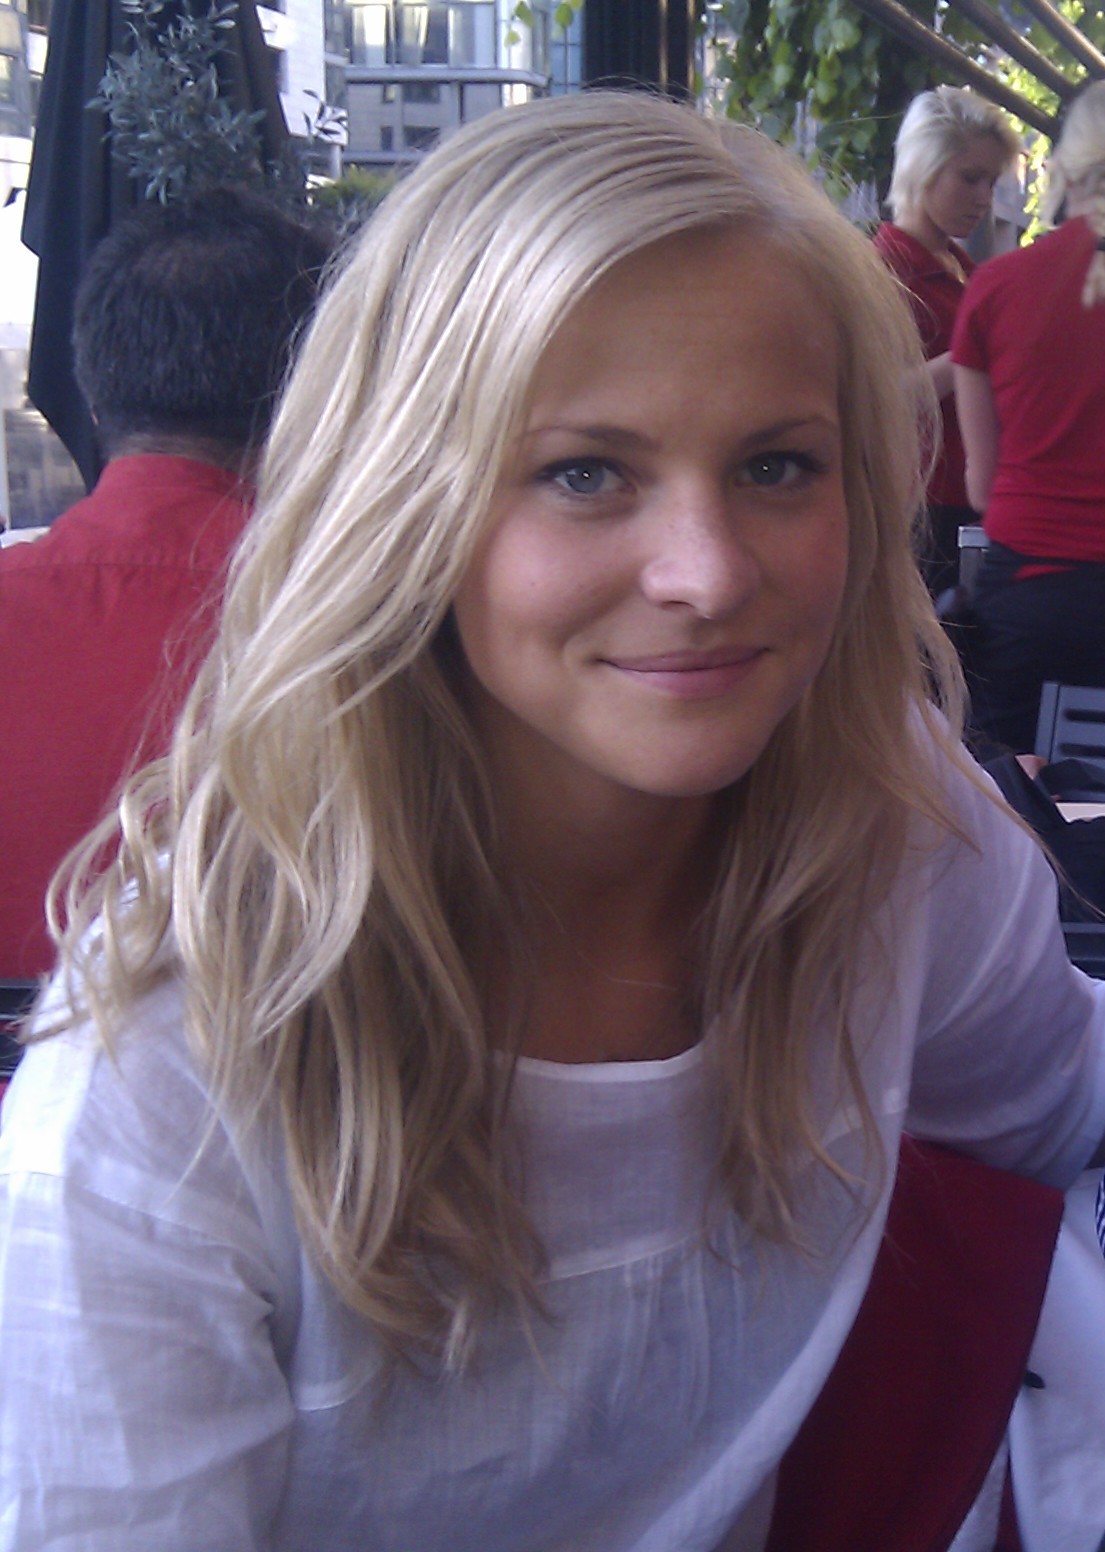 21-åriga Malin Svensson arbetar och bor i Oslo sedan oktober 2009. För henne är arbetet en viktig del i att komma tillbaka till vardagen.